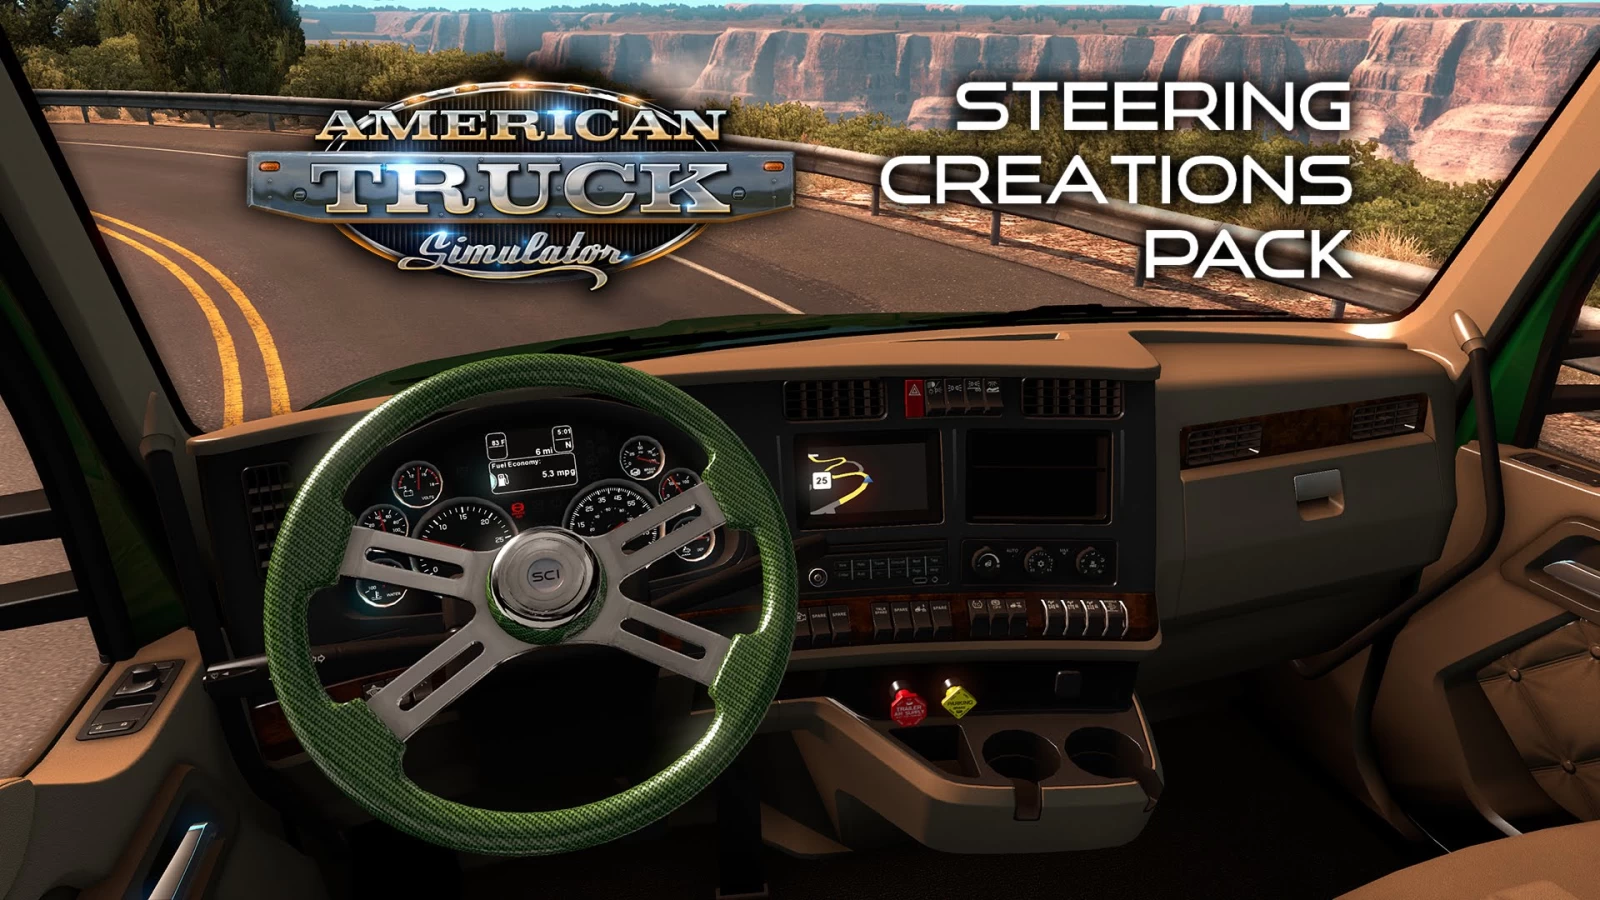 American Truck Simulator - Steering Creations Pack DLC Update